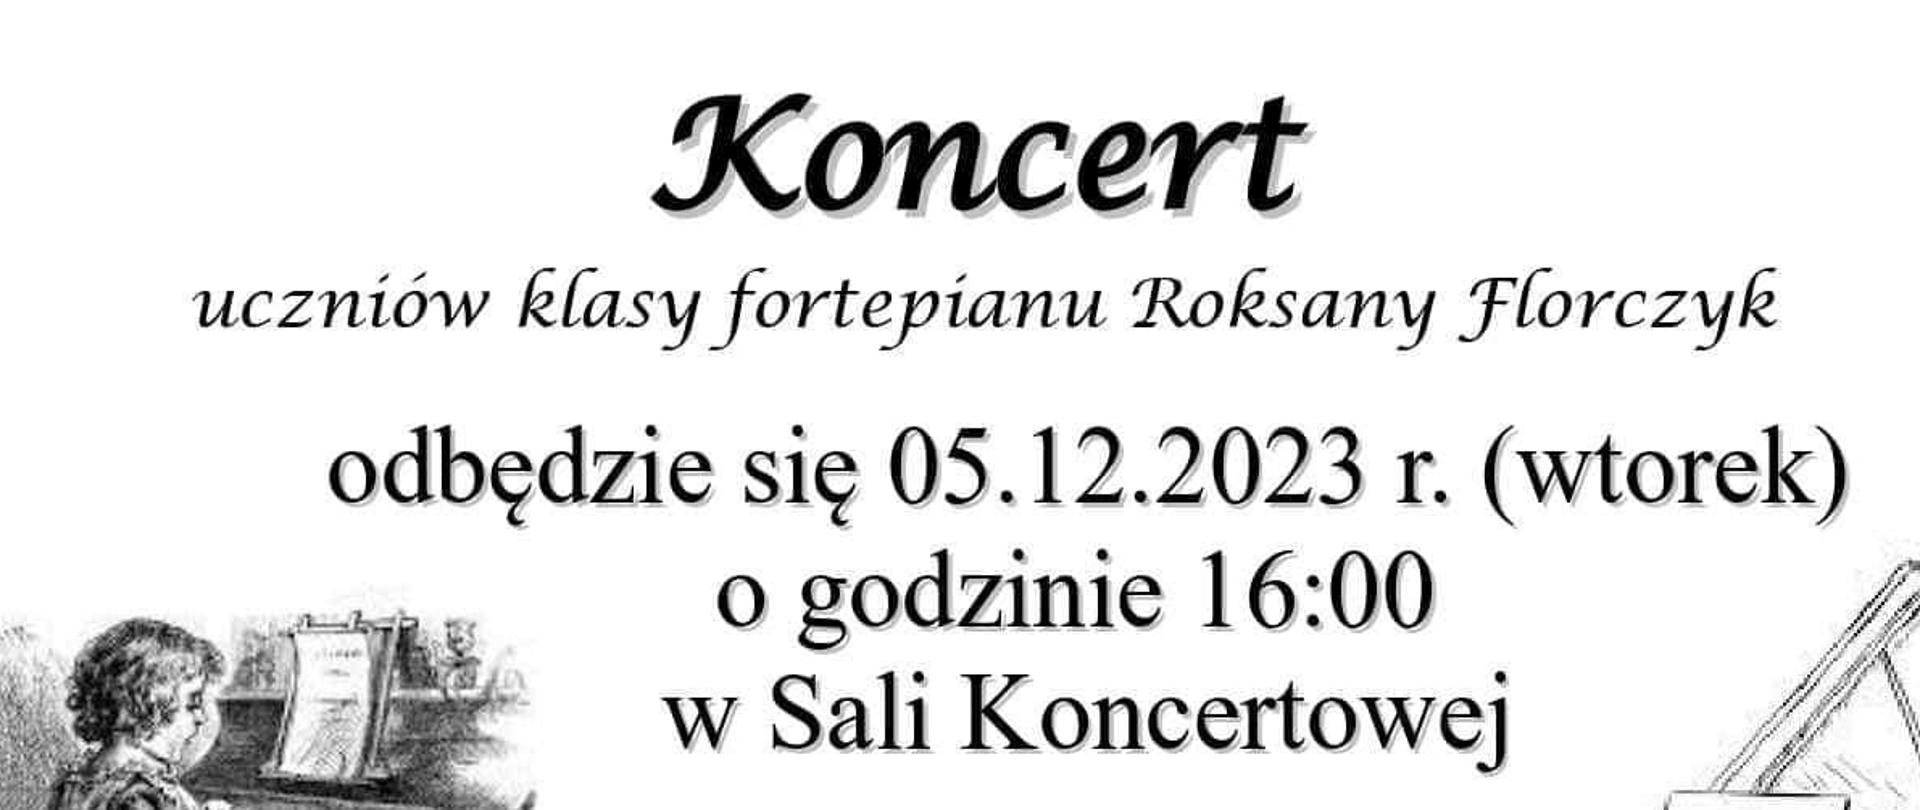 Informacja o koncercie uczniów klasy fortepianu Pani Roksany Florczyk.